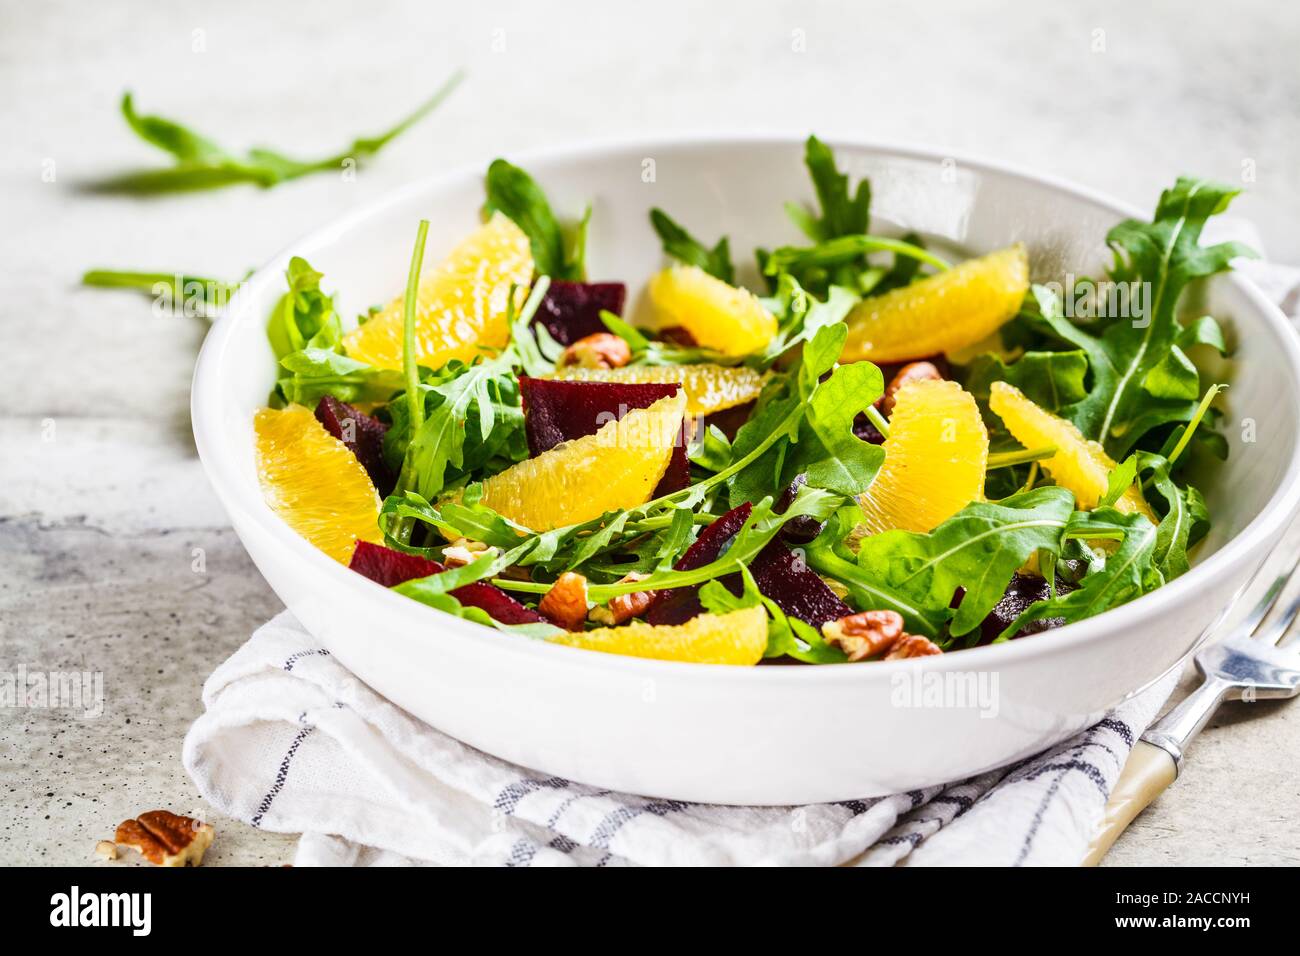 Zuckerrüben- und orange-Salat mit Rucola und Nüsse in einer weißen Schüssel. Gesunde vegane Ernährung Konzept. Stockfoto